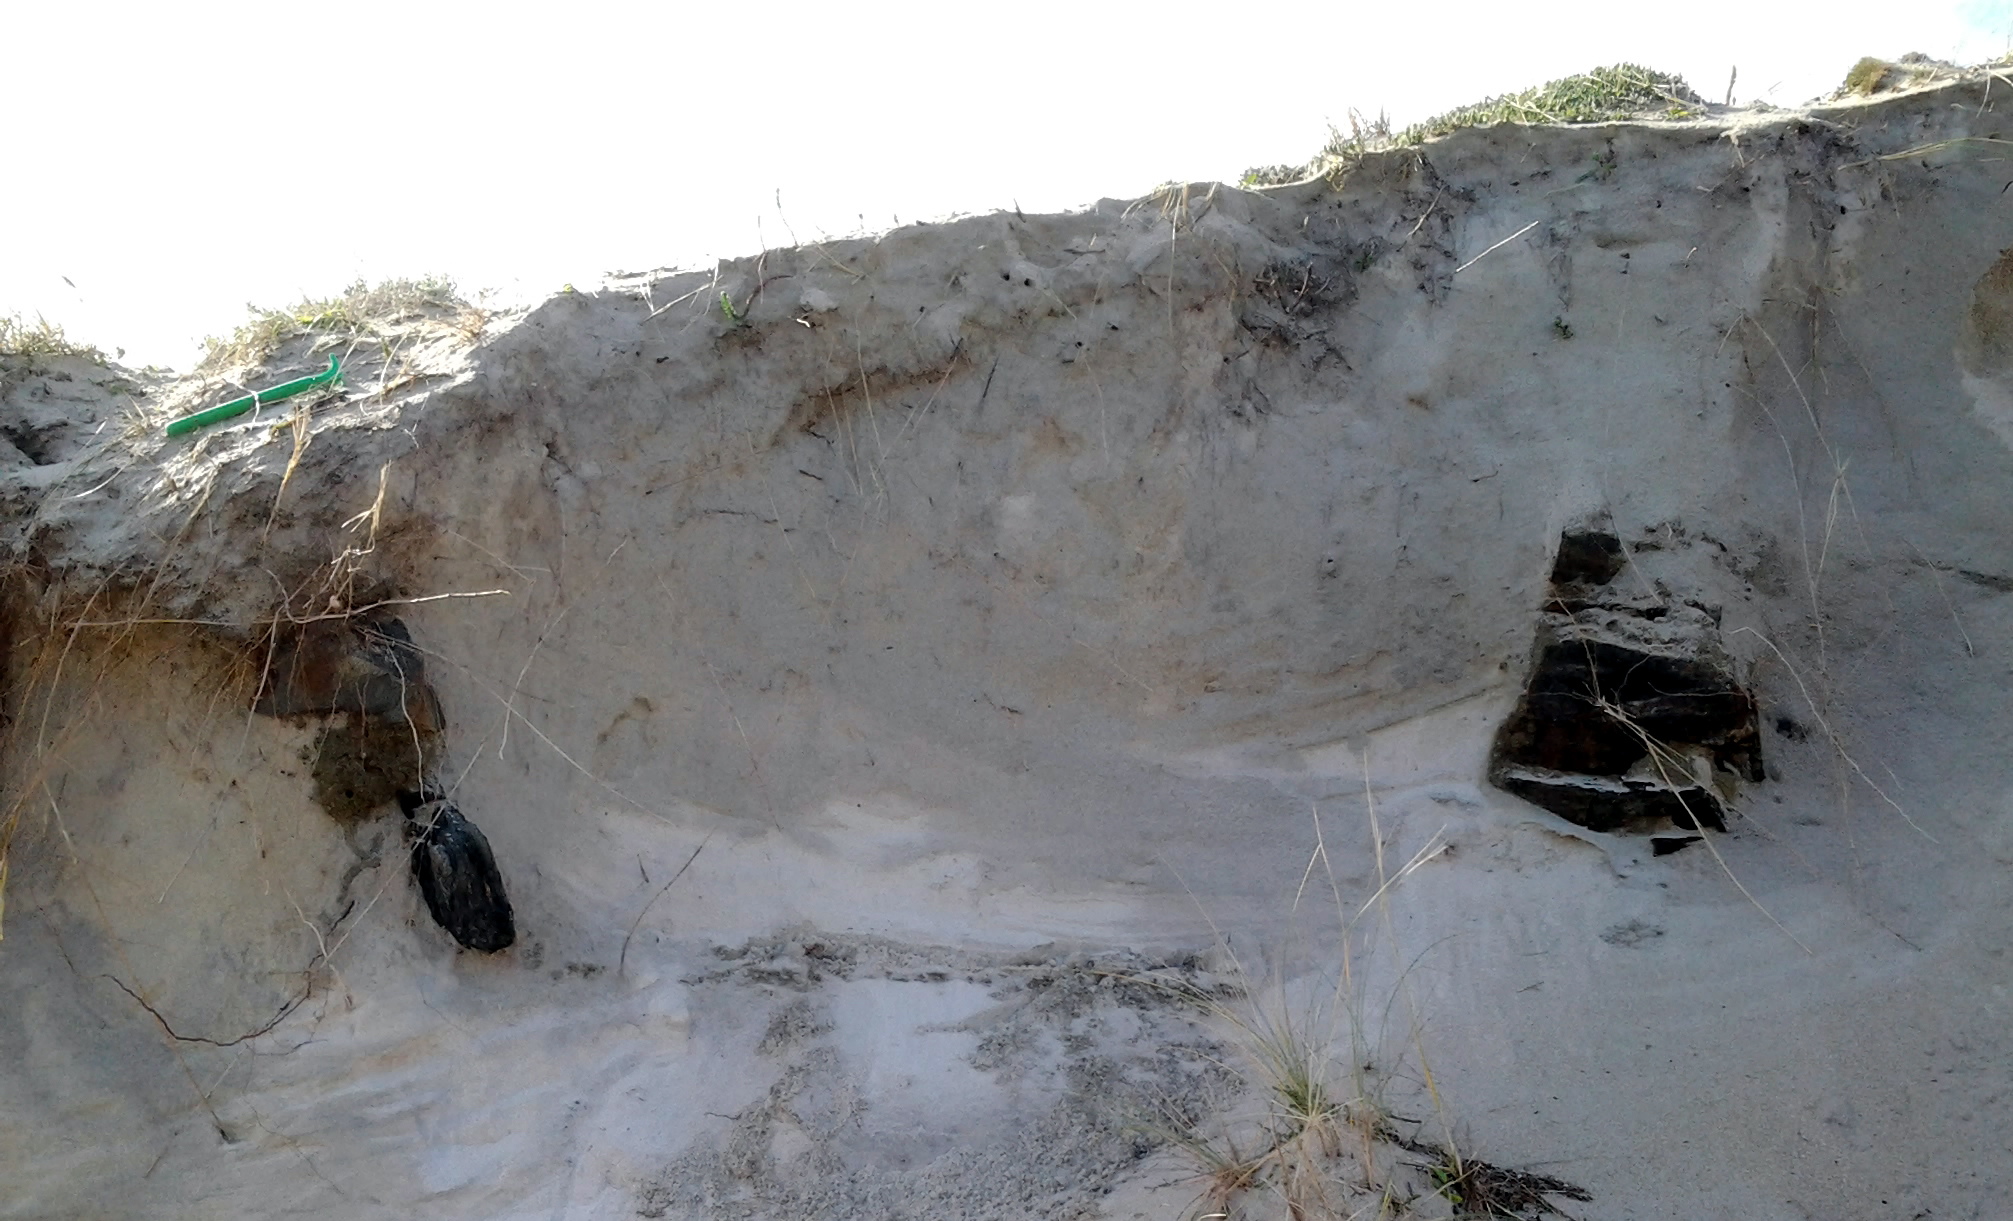 Foto 7 (abajo): También en enero de 2014, pude ver estos restos por primera vez. Puede apreciarse lo que pudiera ser un suelo de tierra. (Playa de Santa Comba)